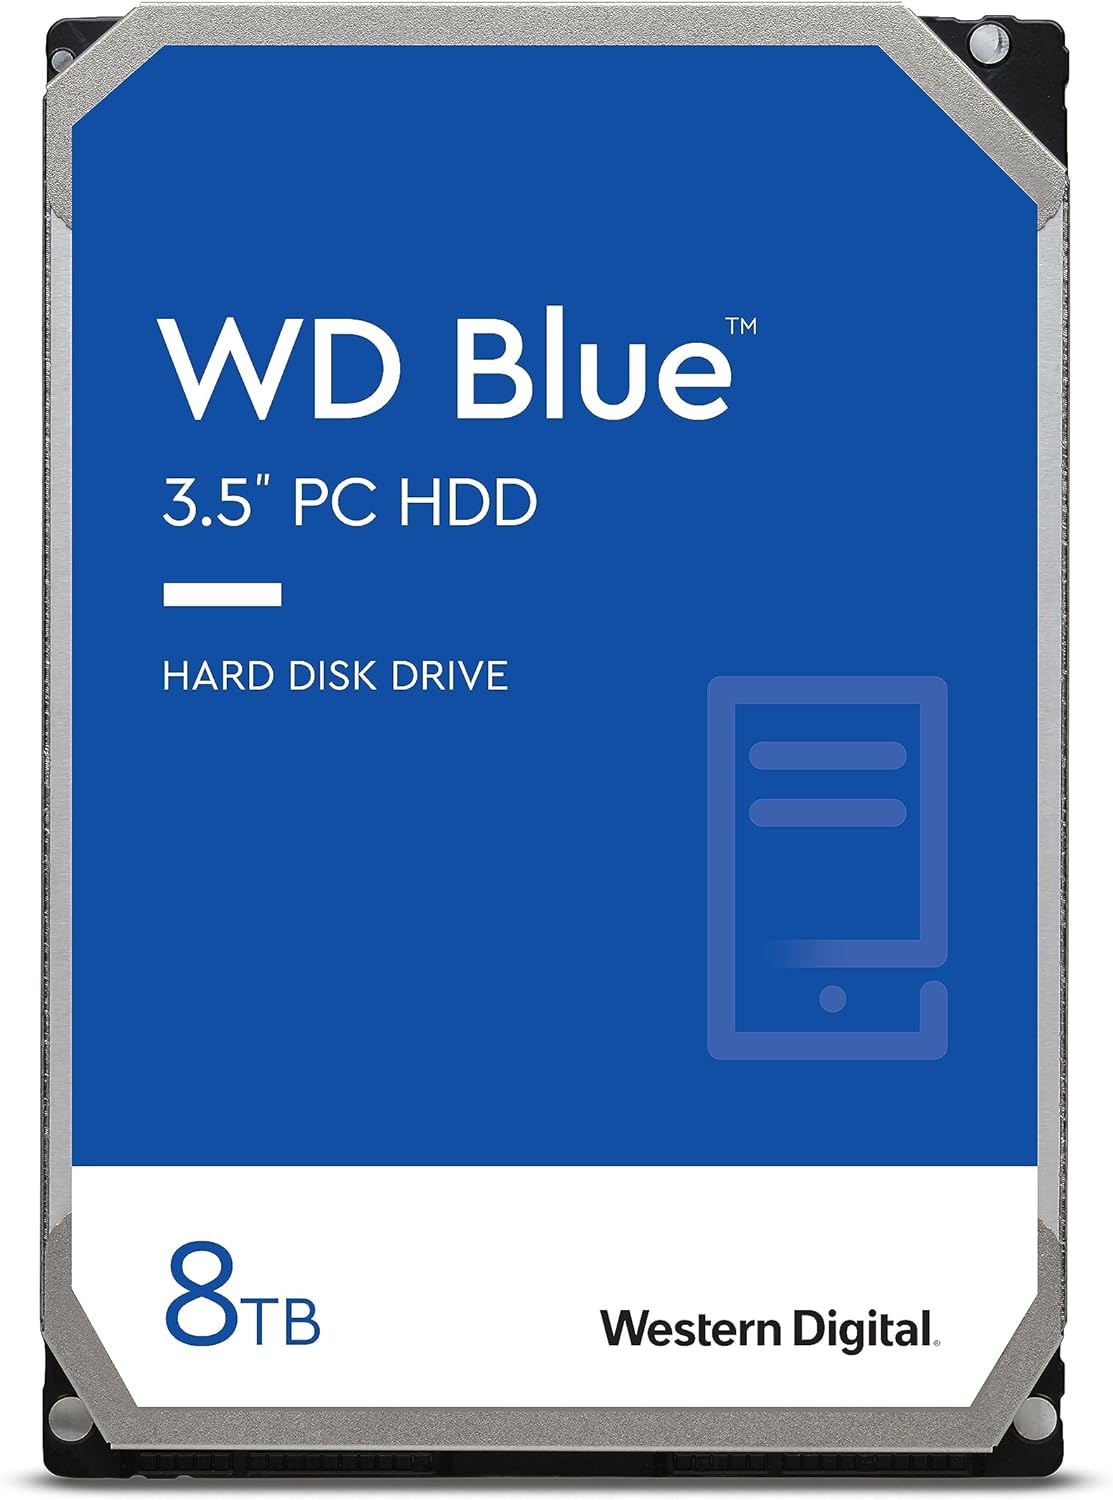 Western Digital 8TB WD Blue PC Internal Hard Drive HDD - 5640 RPM, SATA 6 Gb/s, 256 MB Cache, 3.5" - WD80EAAZ $109.99